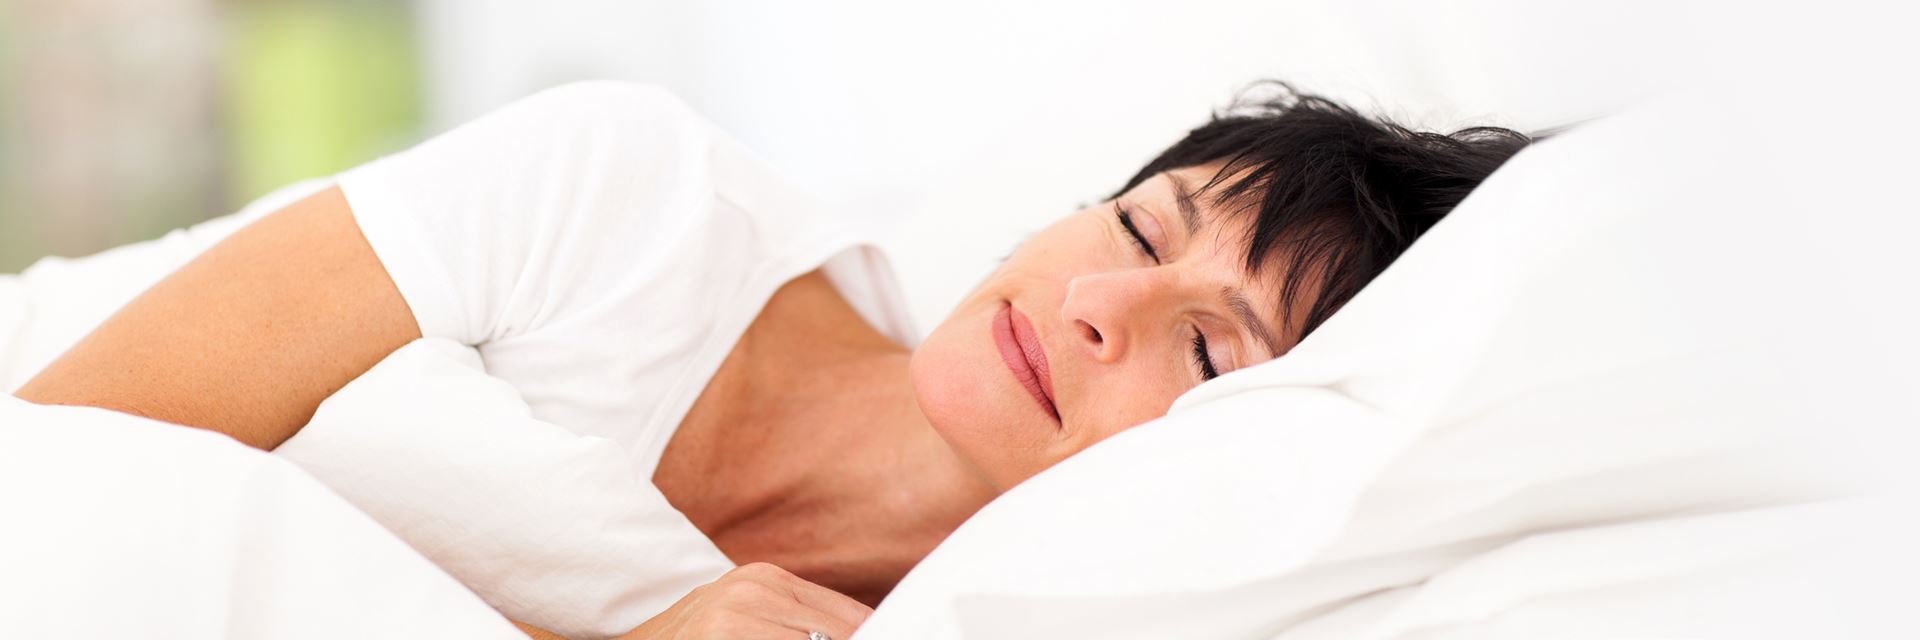 10 Τρόποι που θα βοηθήσουν να αντιμετωπίσετε τα προβλήματα ύπνου